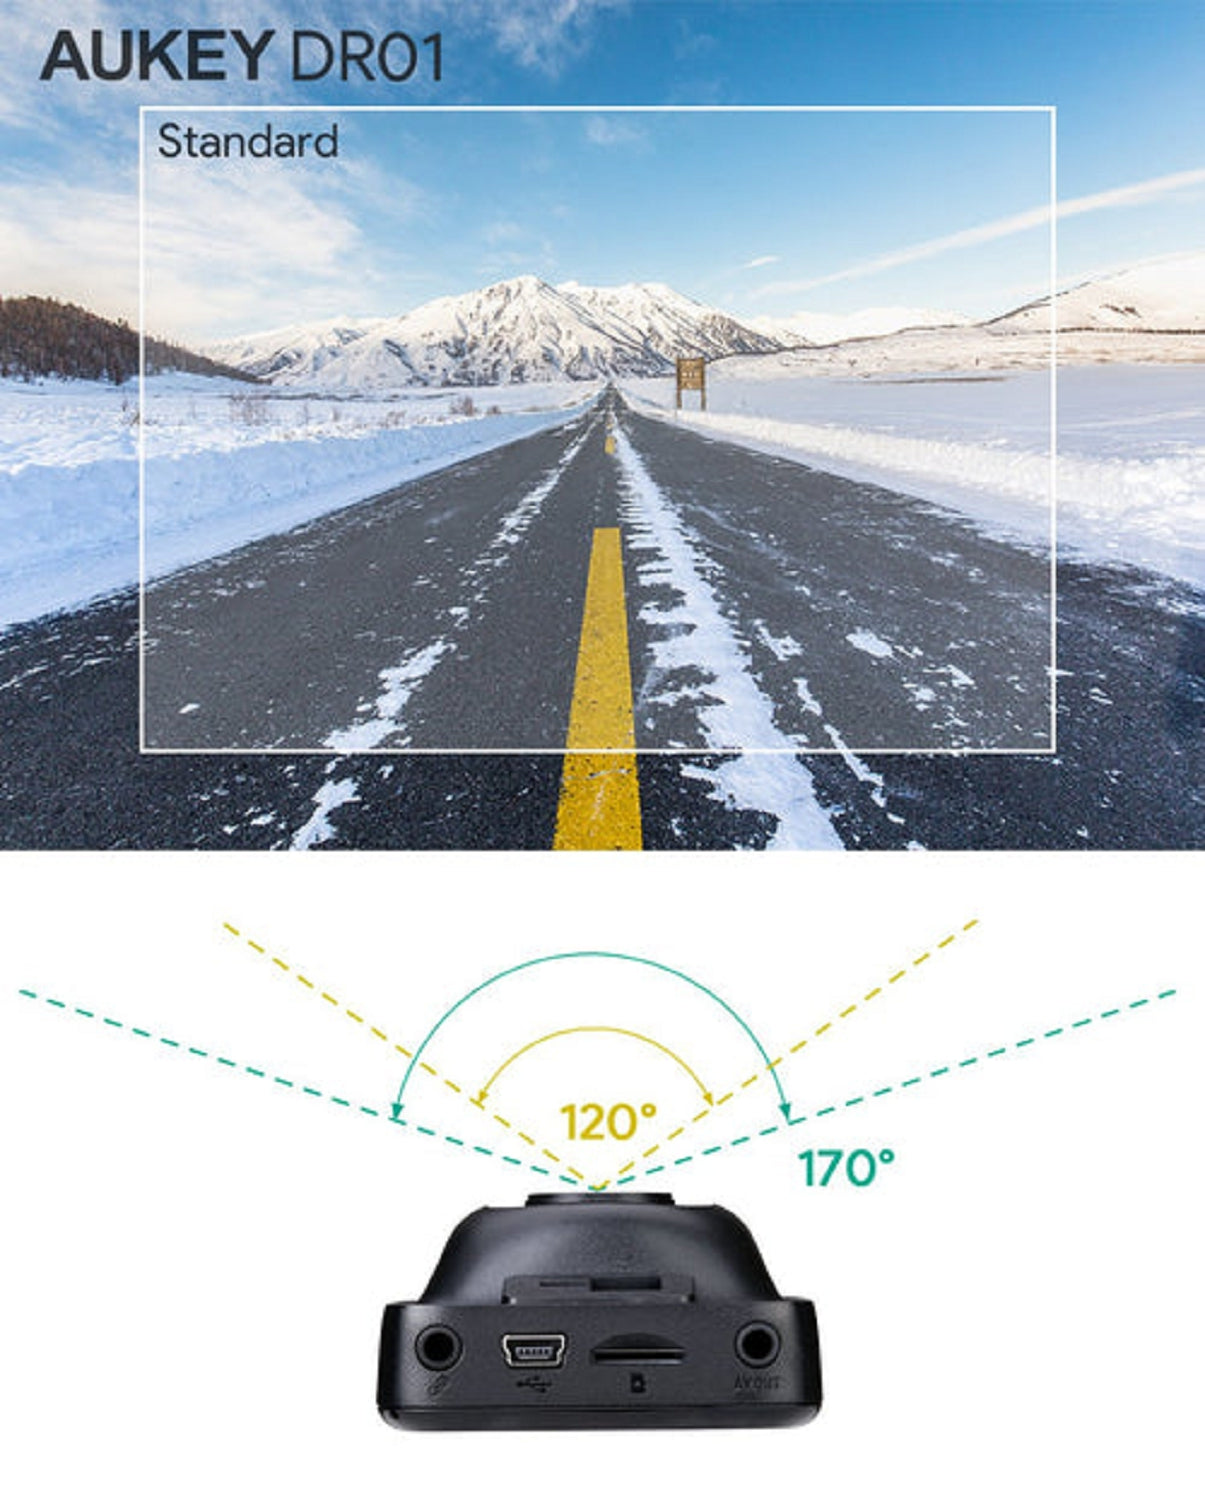 AUKEY Kfz Dashcam 1080p, 170°-Weitwinkel-Objektiv (DR01)